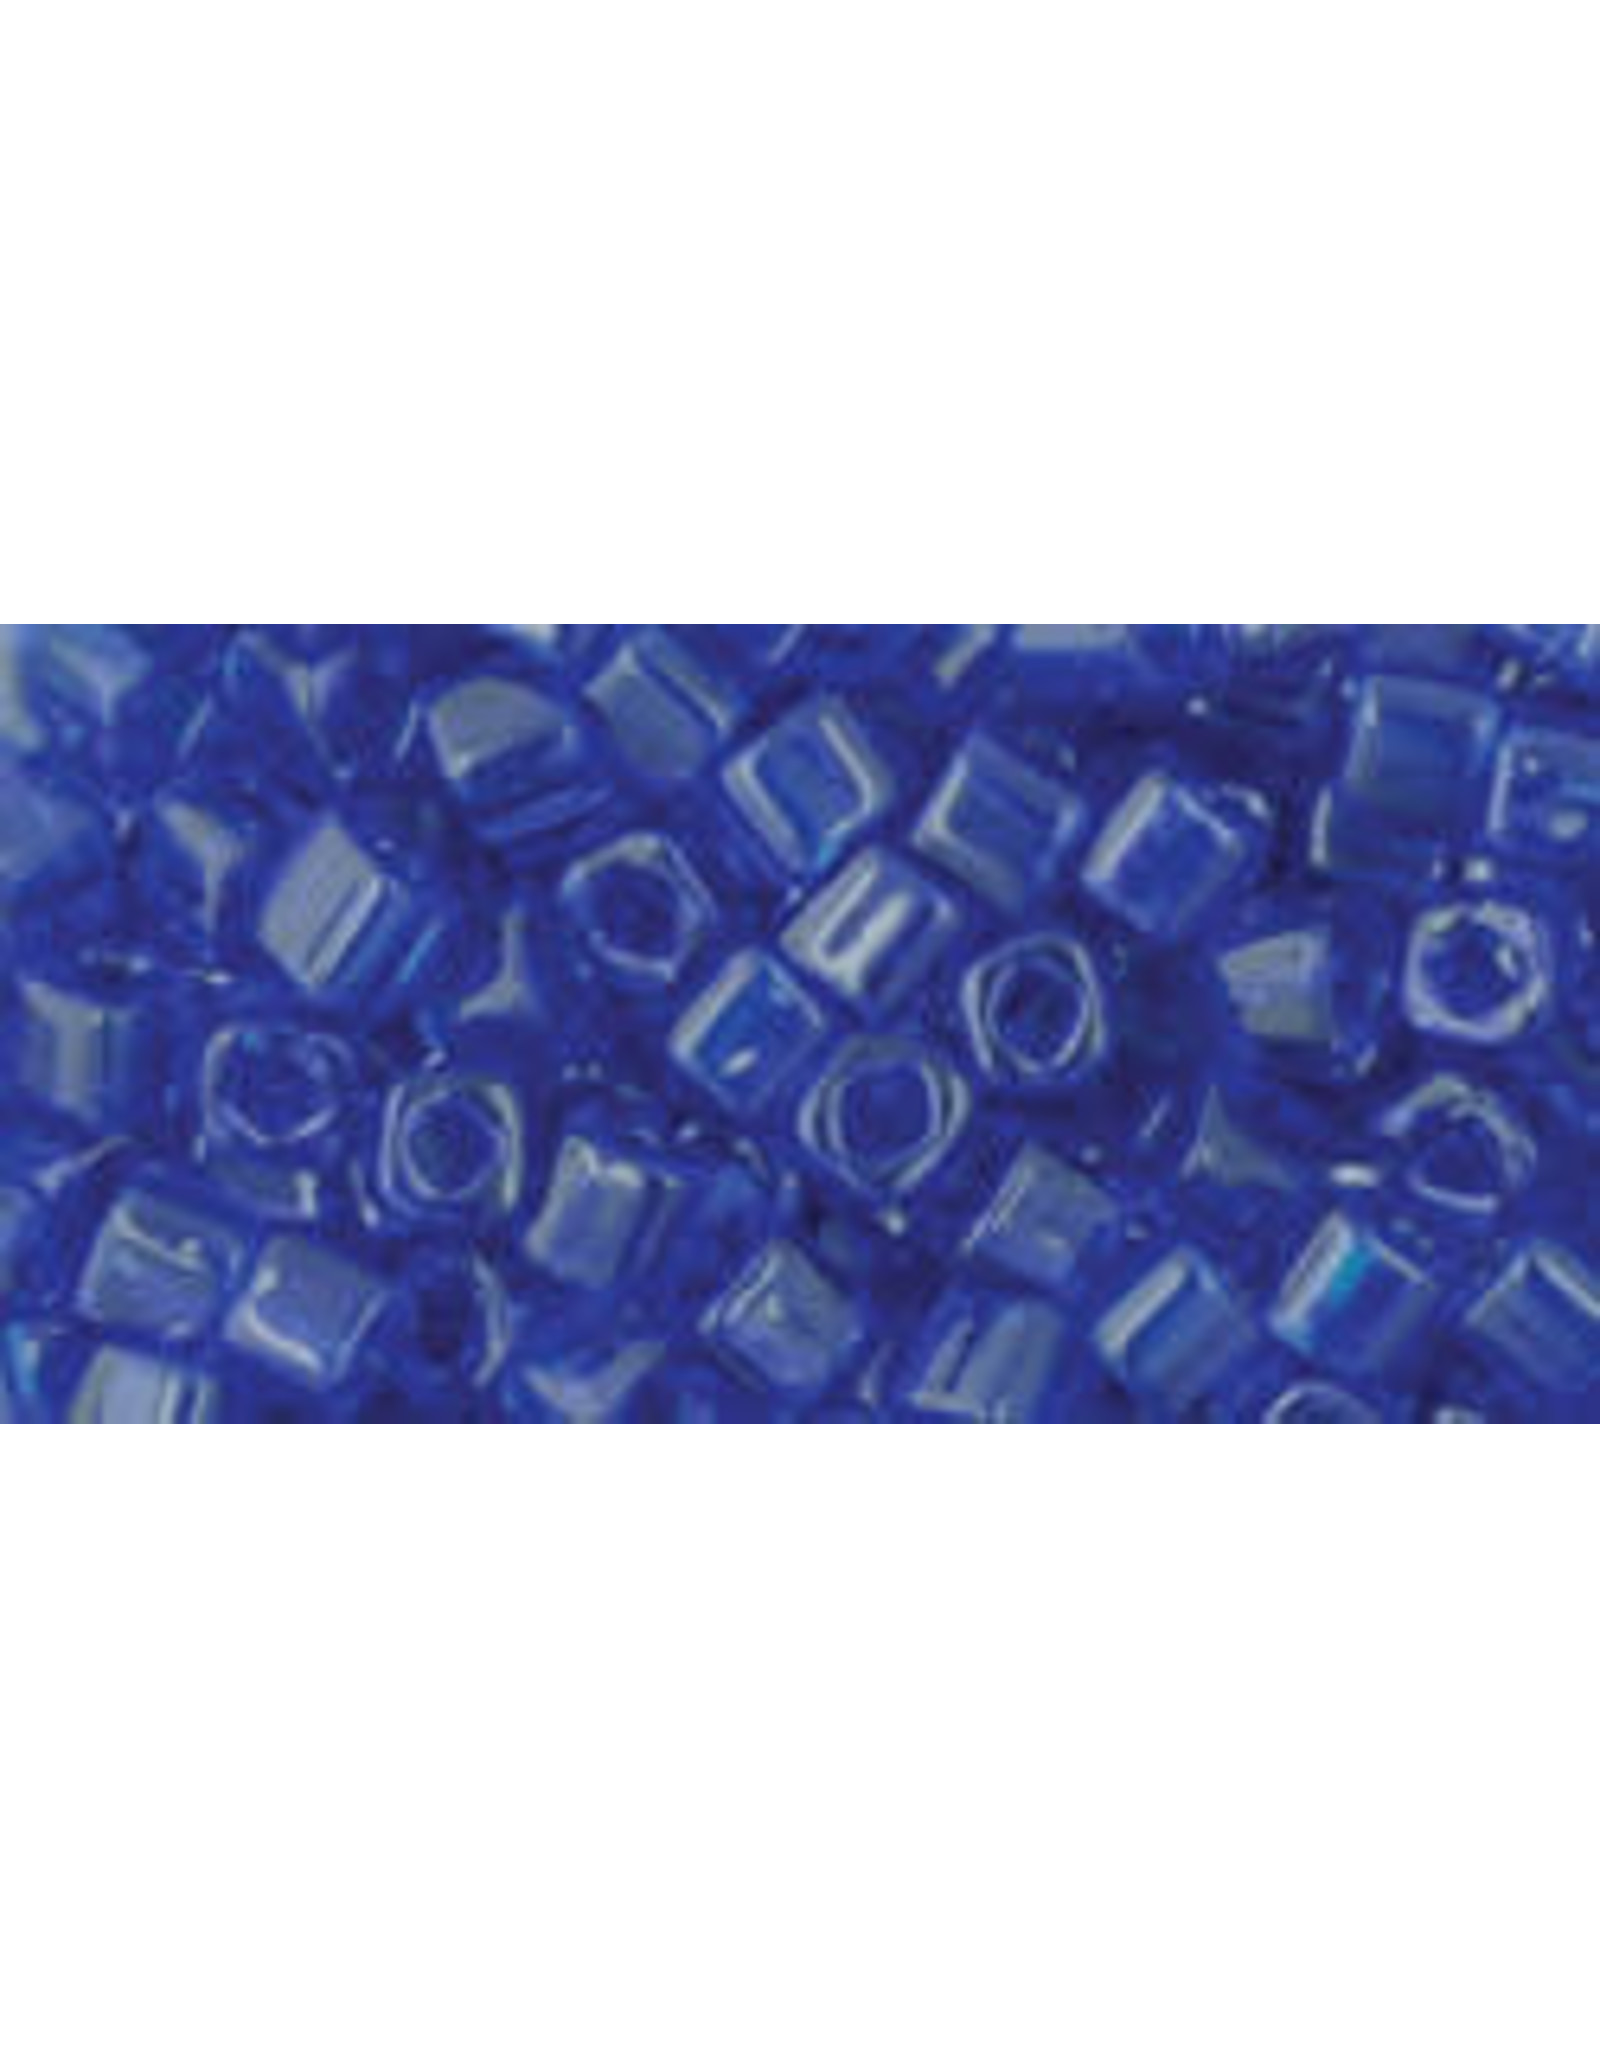 Toho 8 1.5mm  Cube  6g  Transparent Cobalt Blue